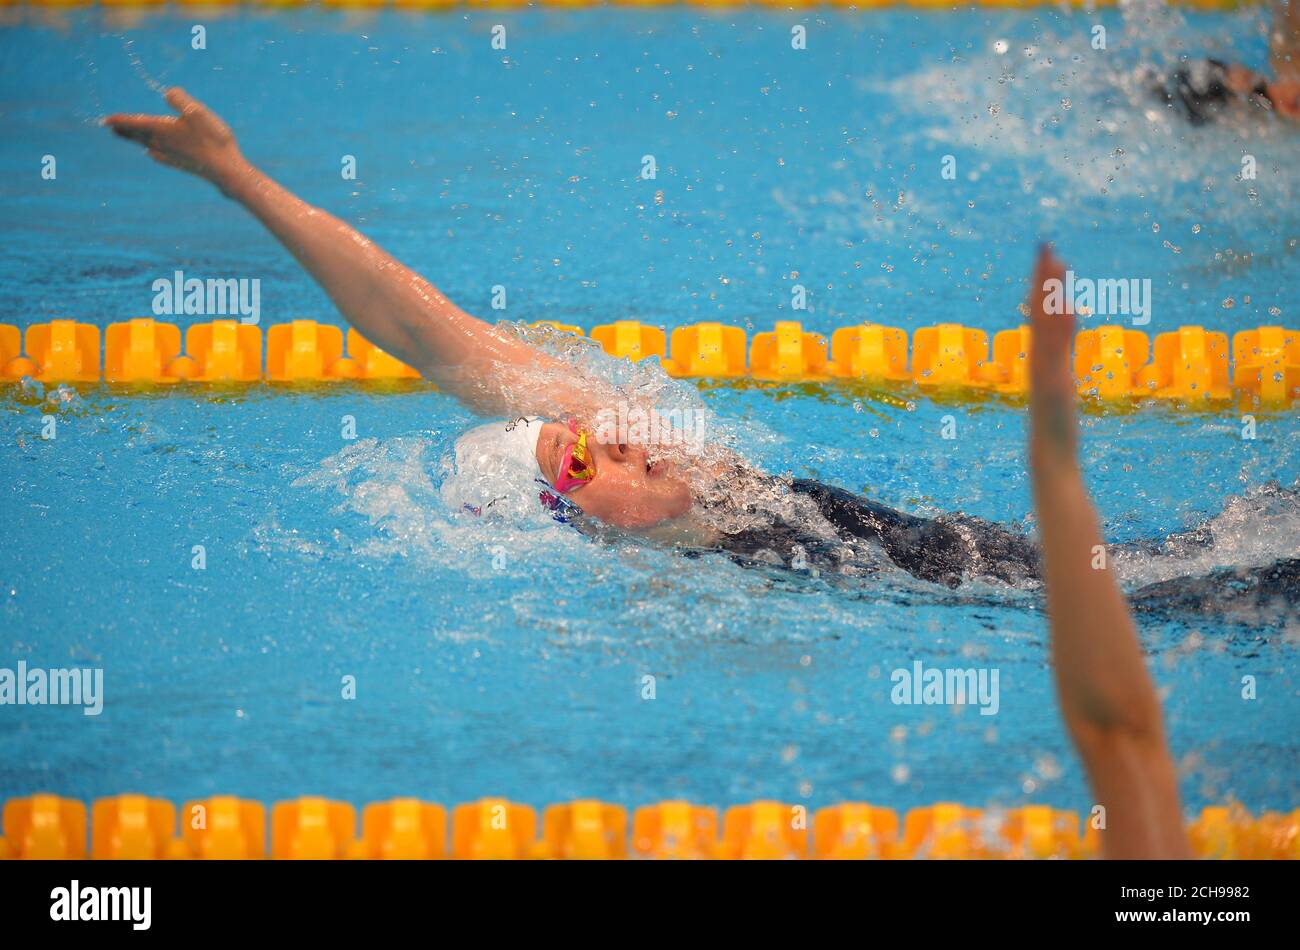 Hannah Miley della Gran Bretagna compete nella semifinale femminile di Medley da 200 m durante il giorno dieci dei Campionati europei di Aquatics al London Aquatics Center di Stratford. Foto Stock